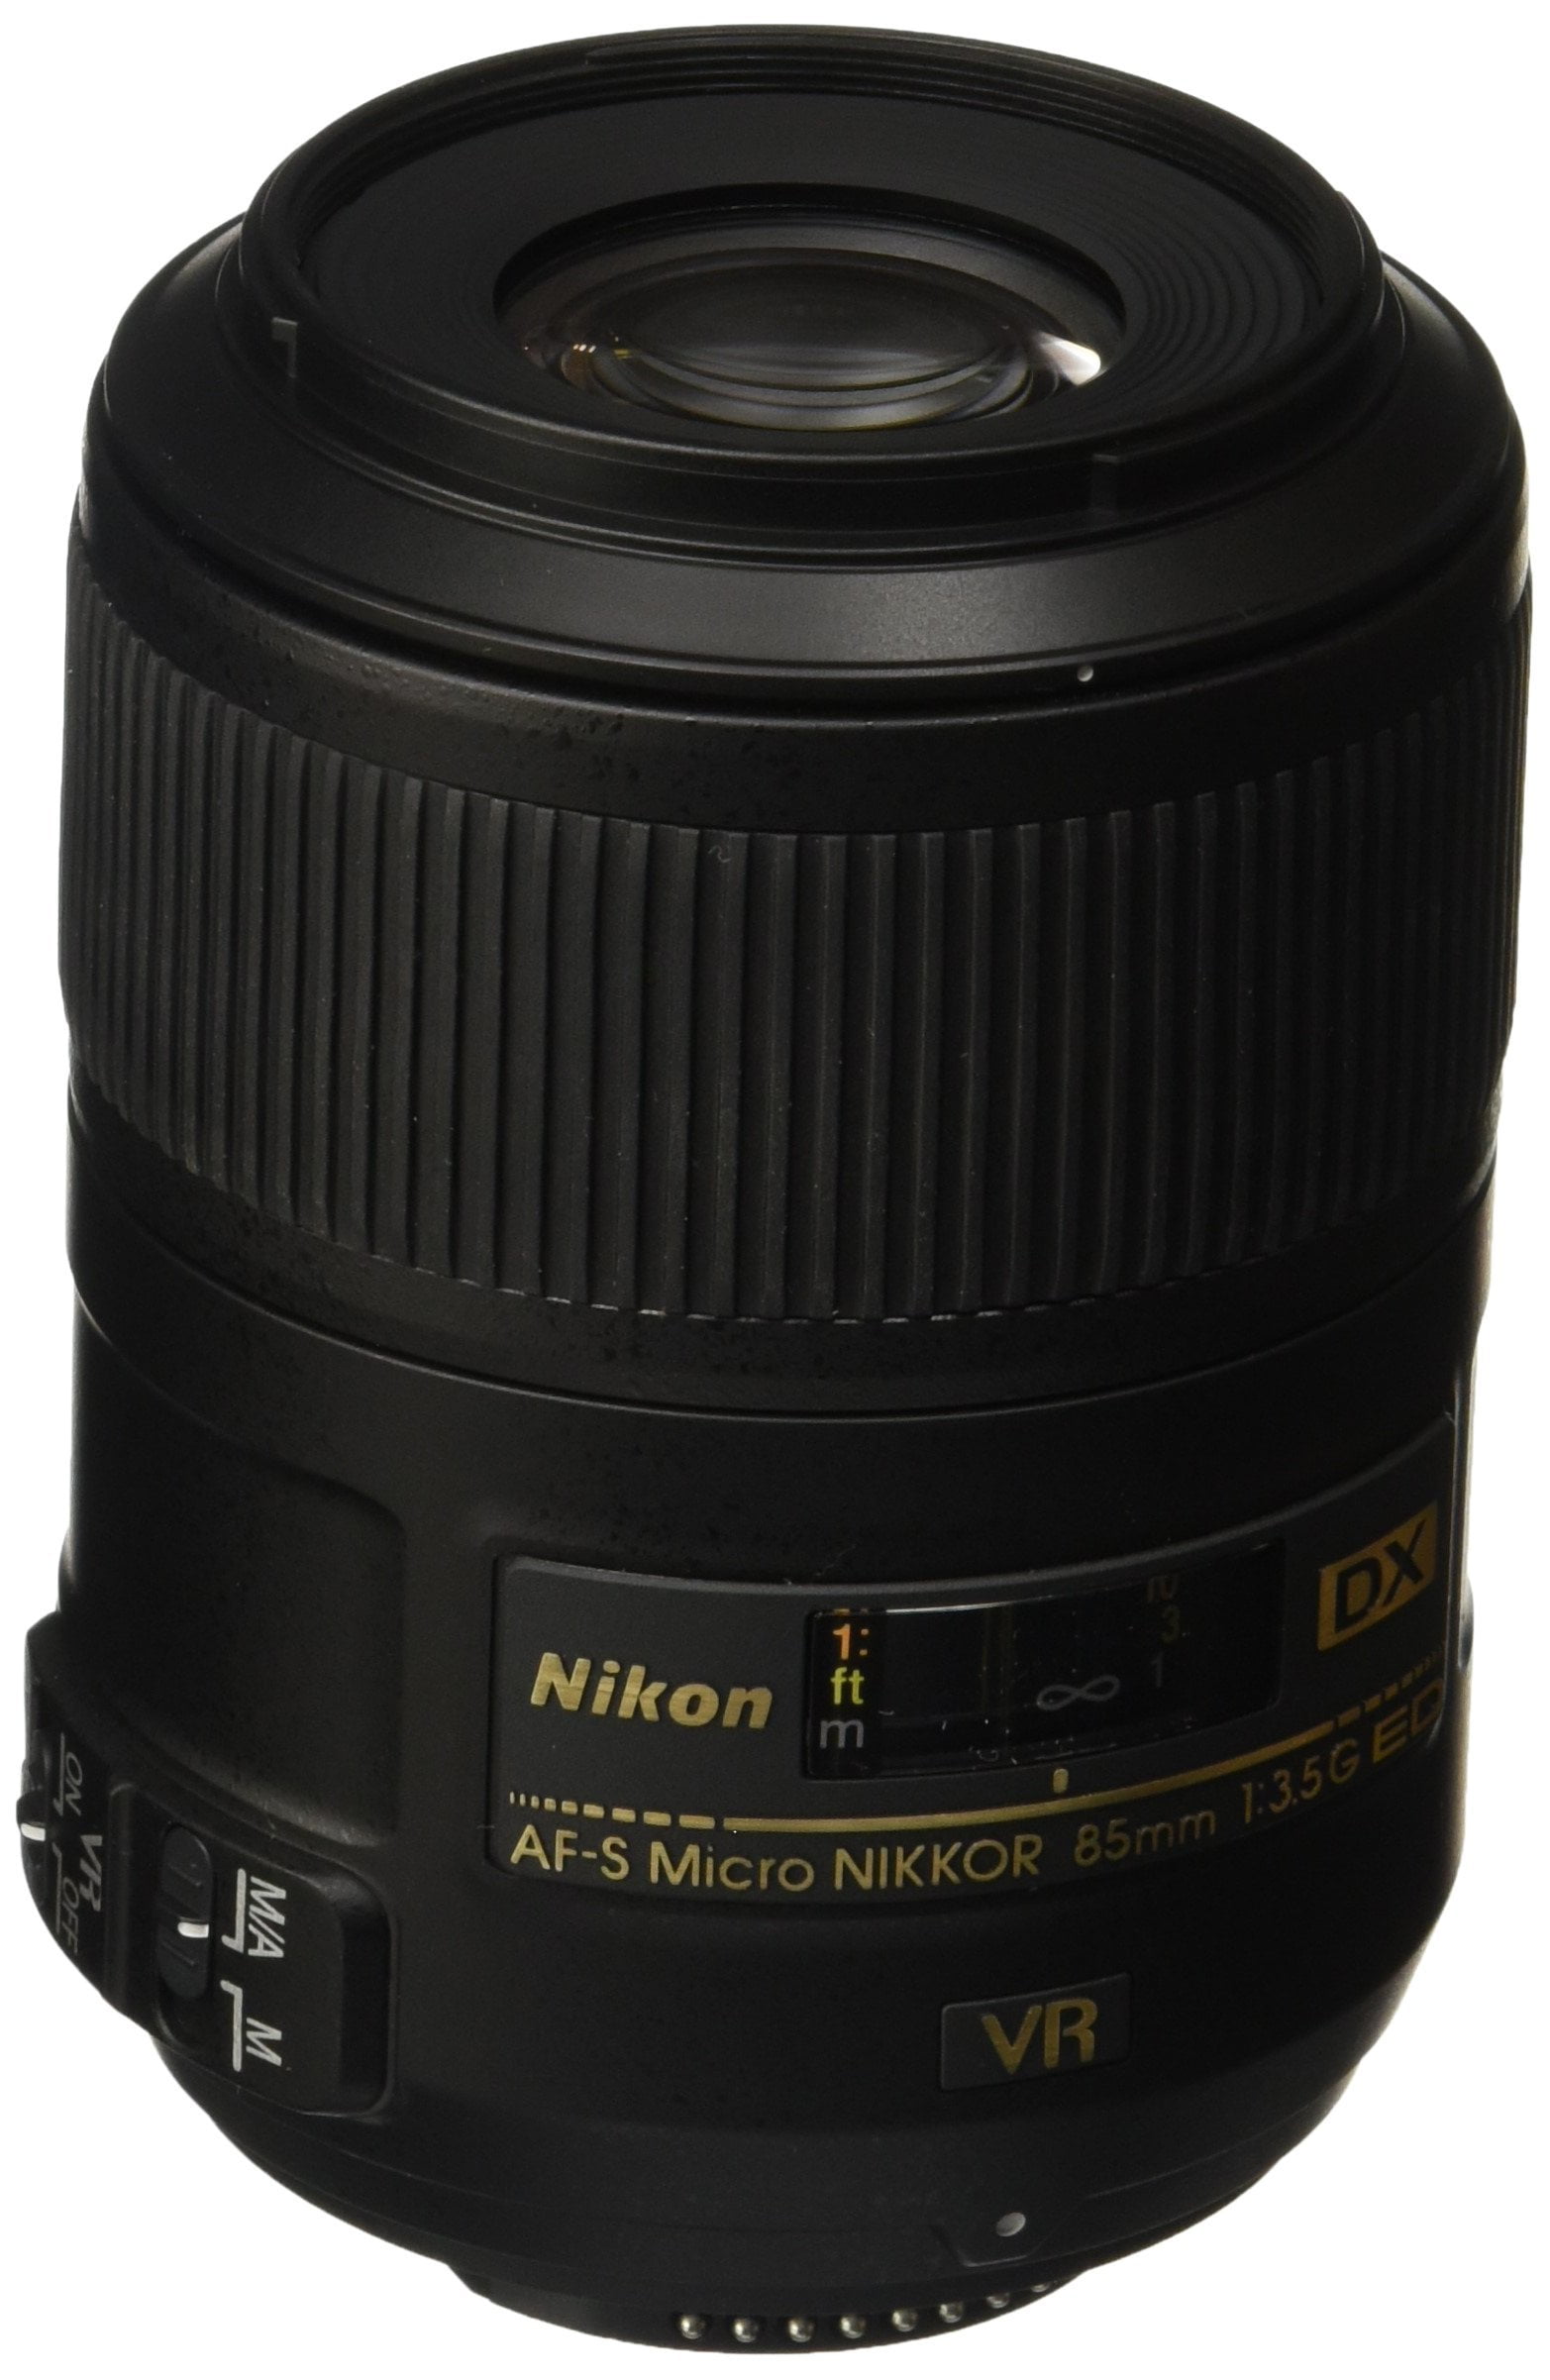 Nikon AF-S DX Micro NIKKOR 85mm f/3.5G ED VR Portrait Lens